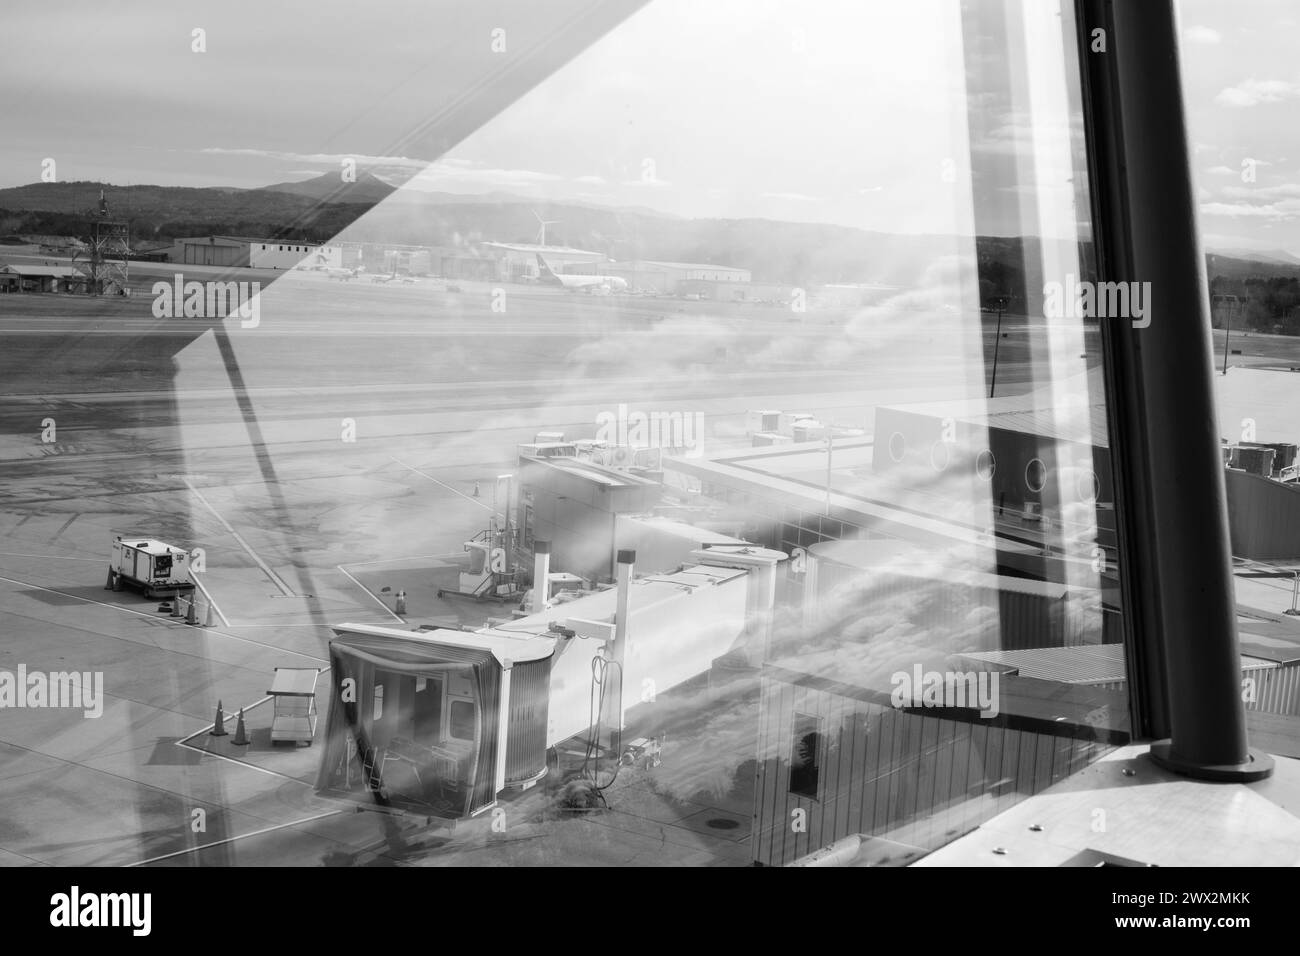 Ciel reflété dans la photo dramatique de Burlington, VT, Patrick Leahy International Airport (BTV), Vermont, Nouvelle-Angleterre, États-Unis. MT. Mansfield au loin. Banque D'Images